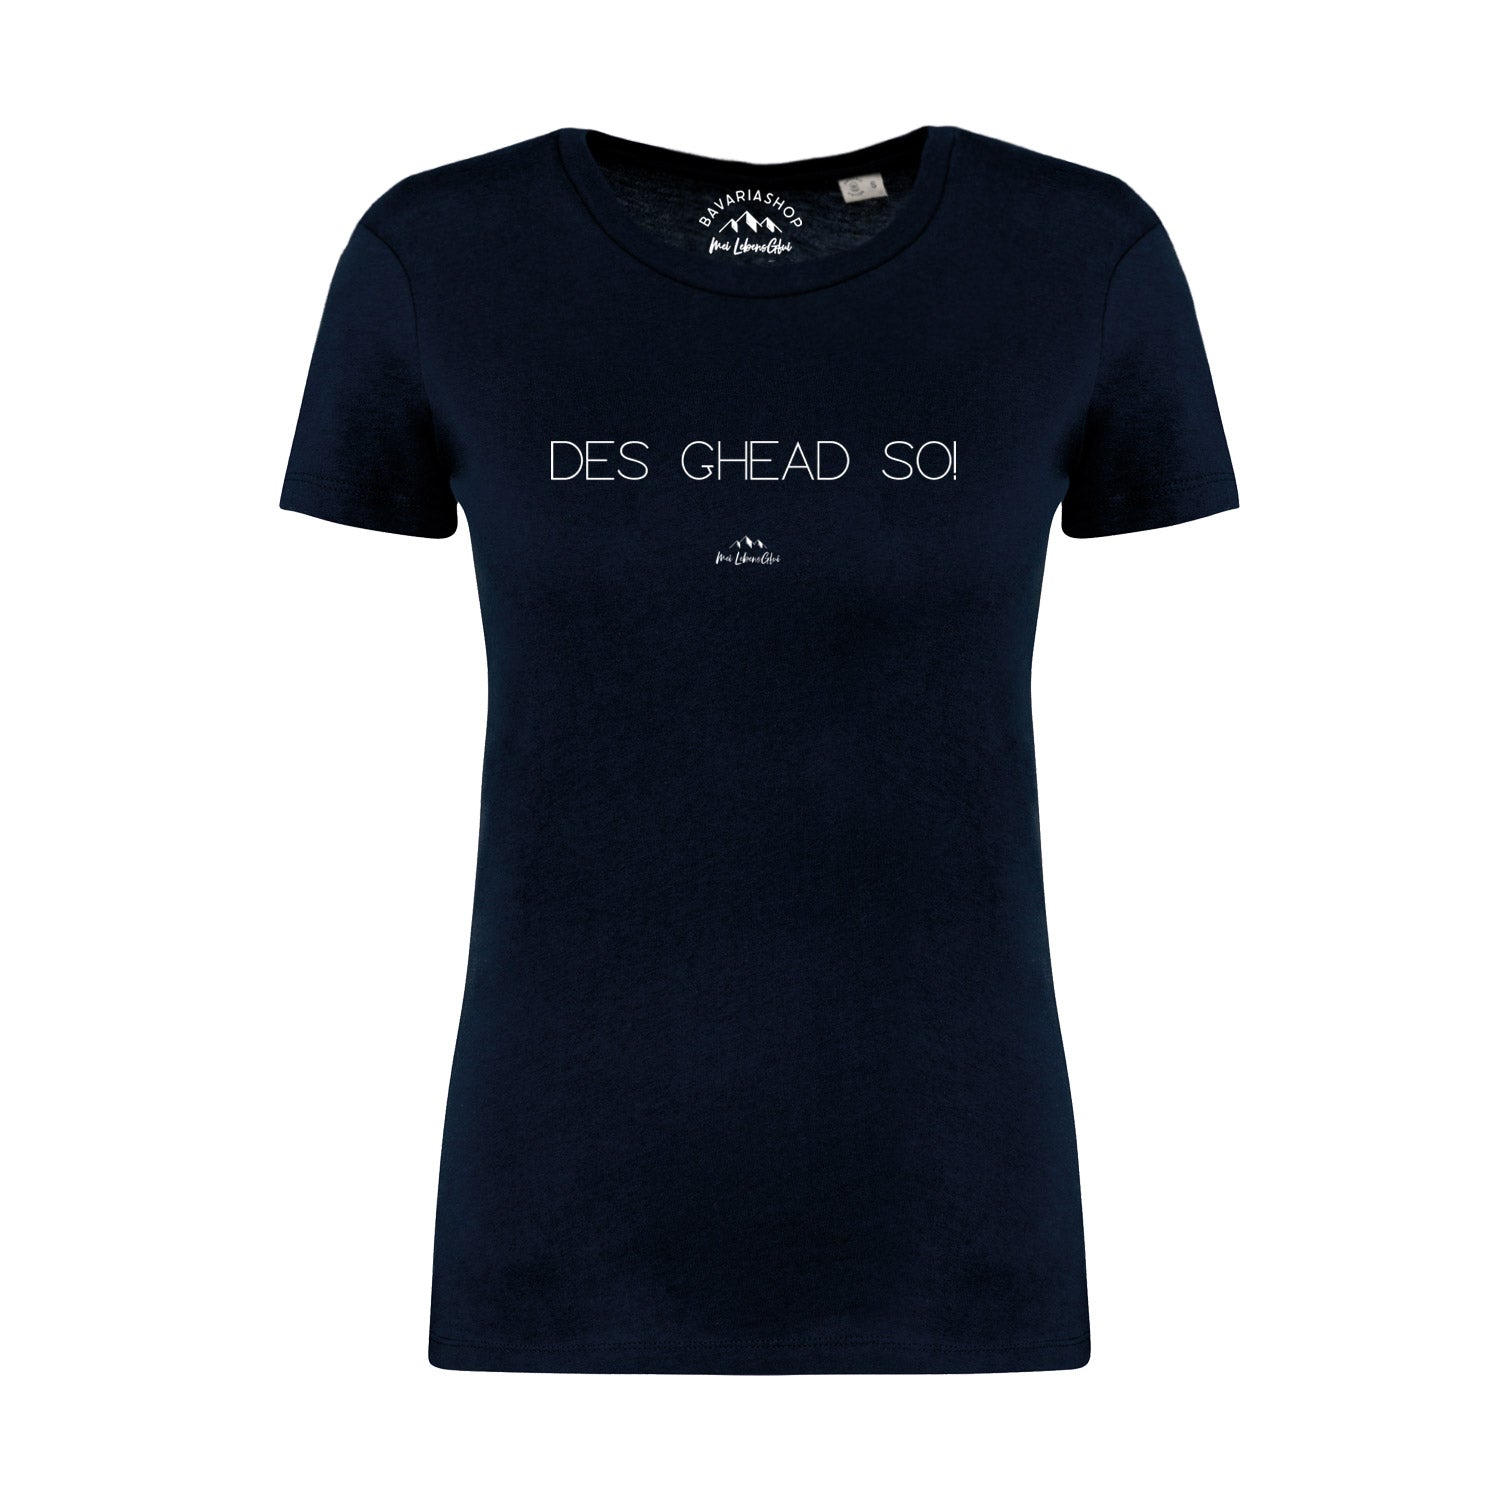 Damen T-Shirt "Des ghead so!"